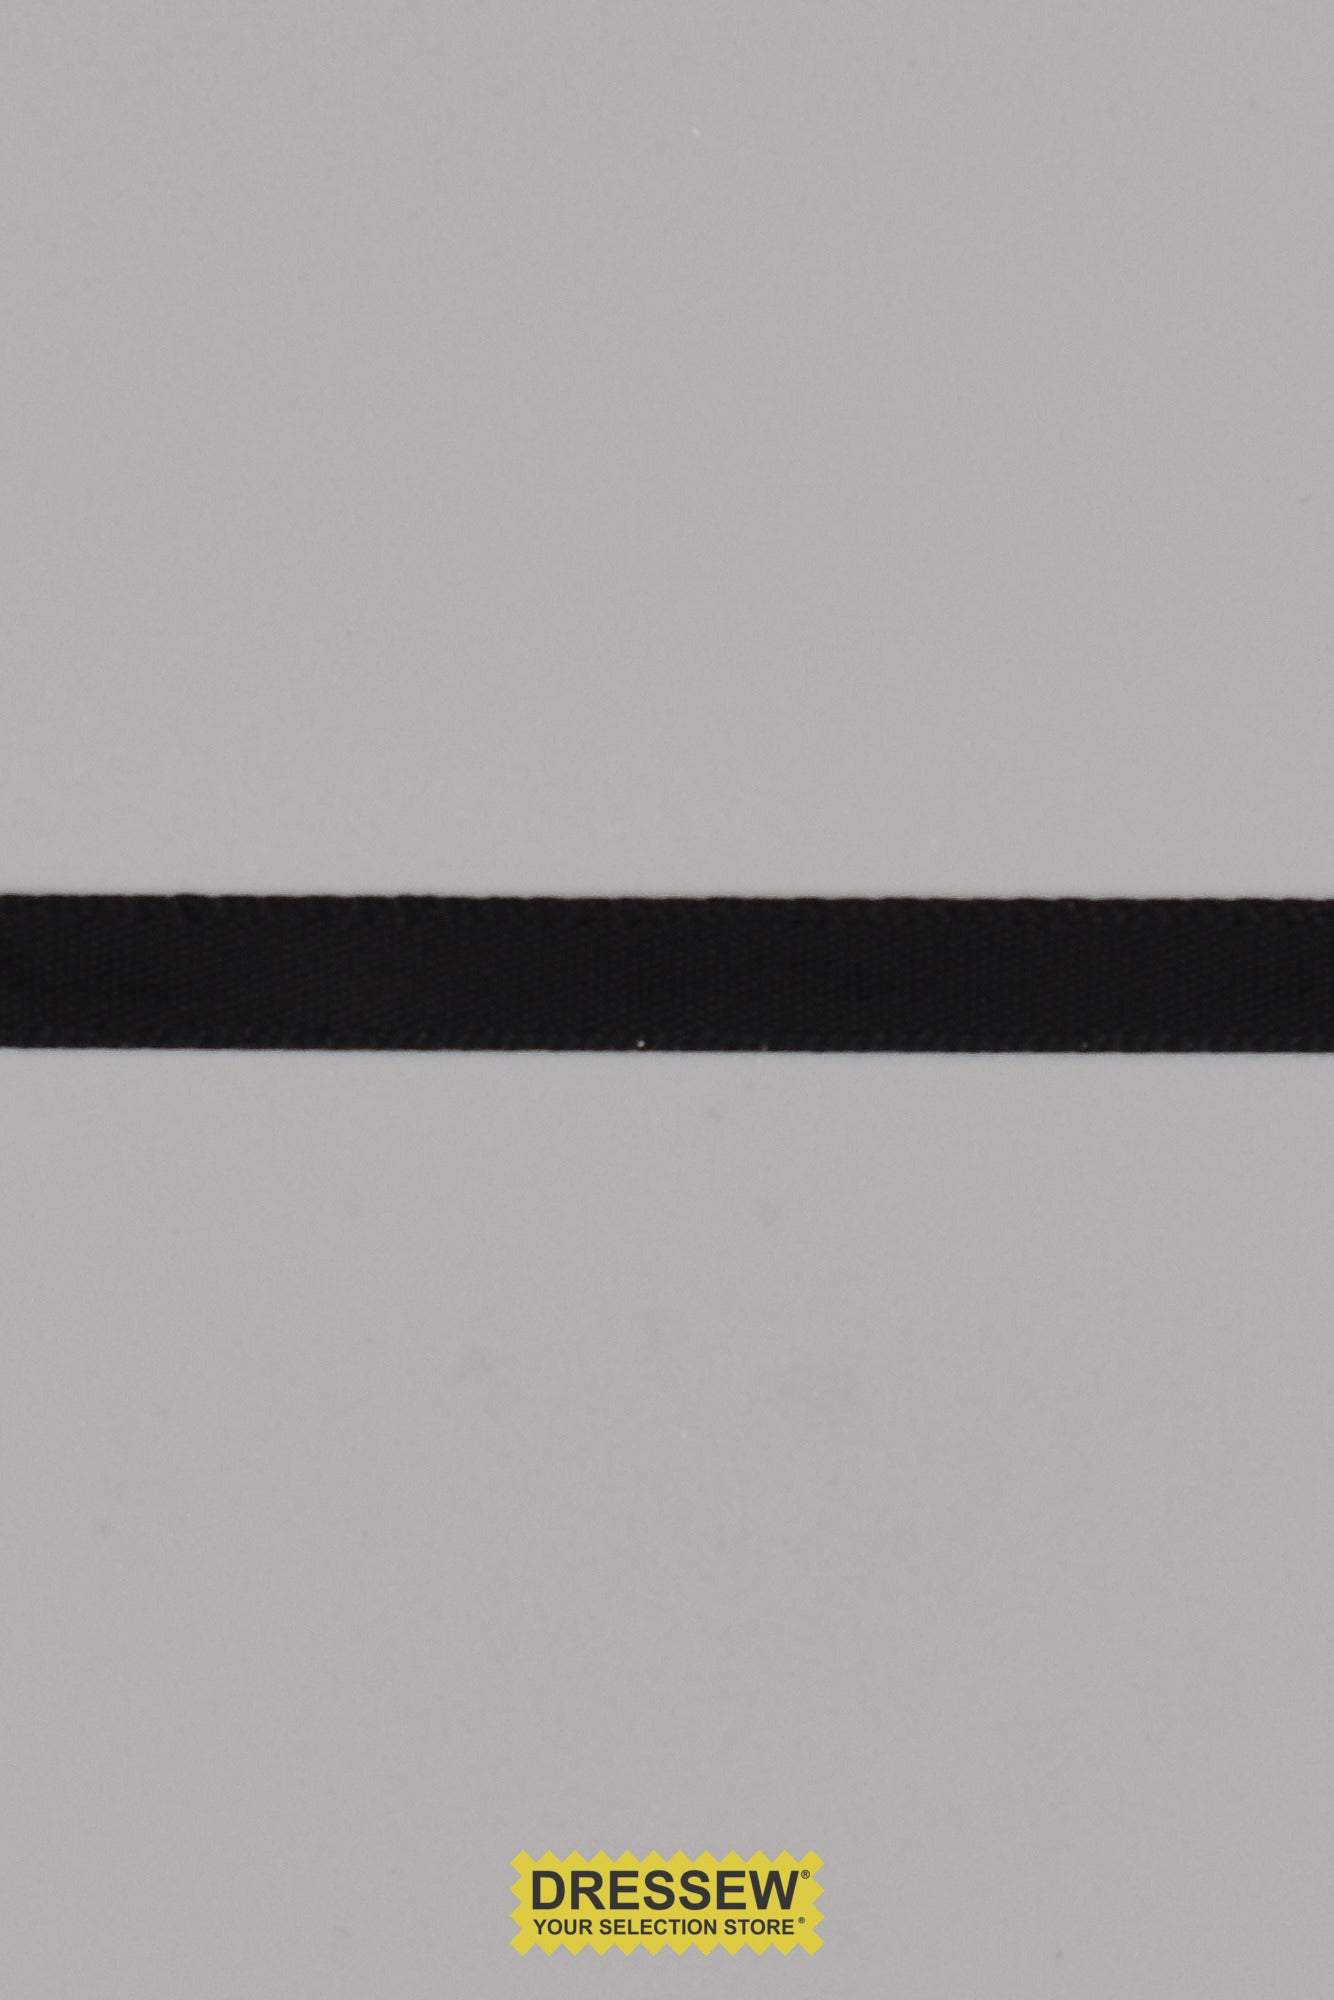 Single Face Satin Ribbon 6mm (1/4") Black